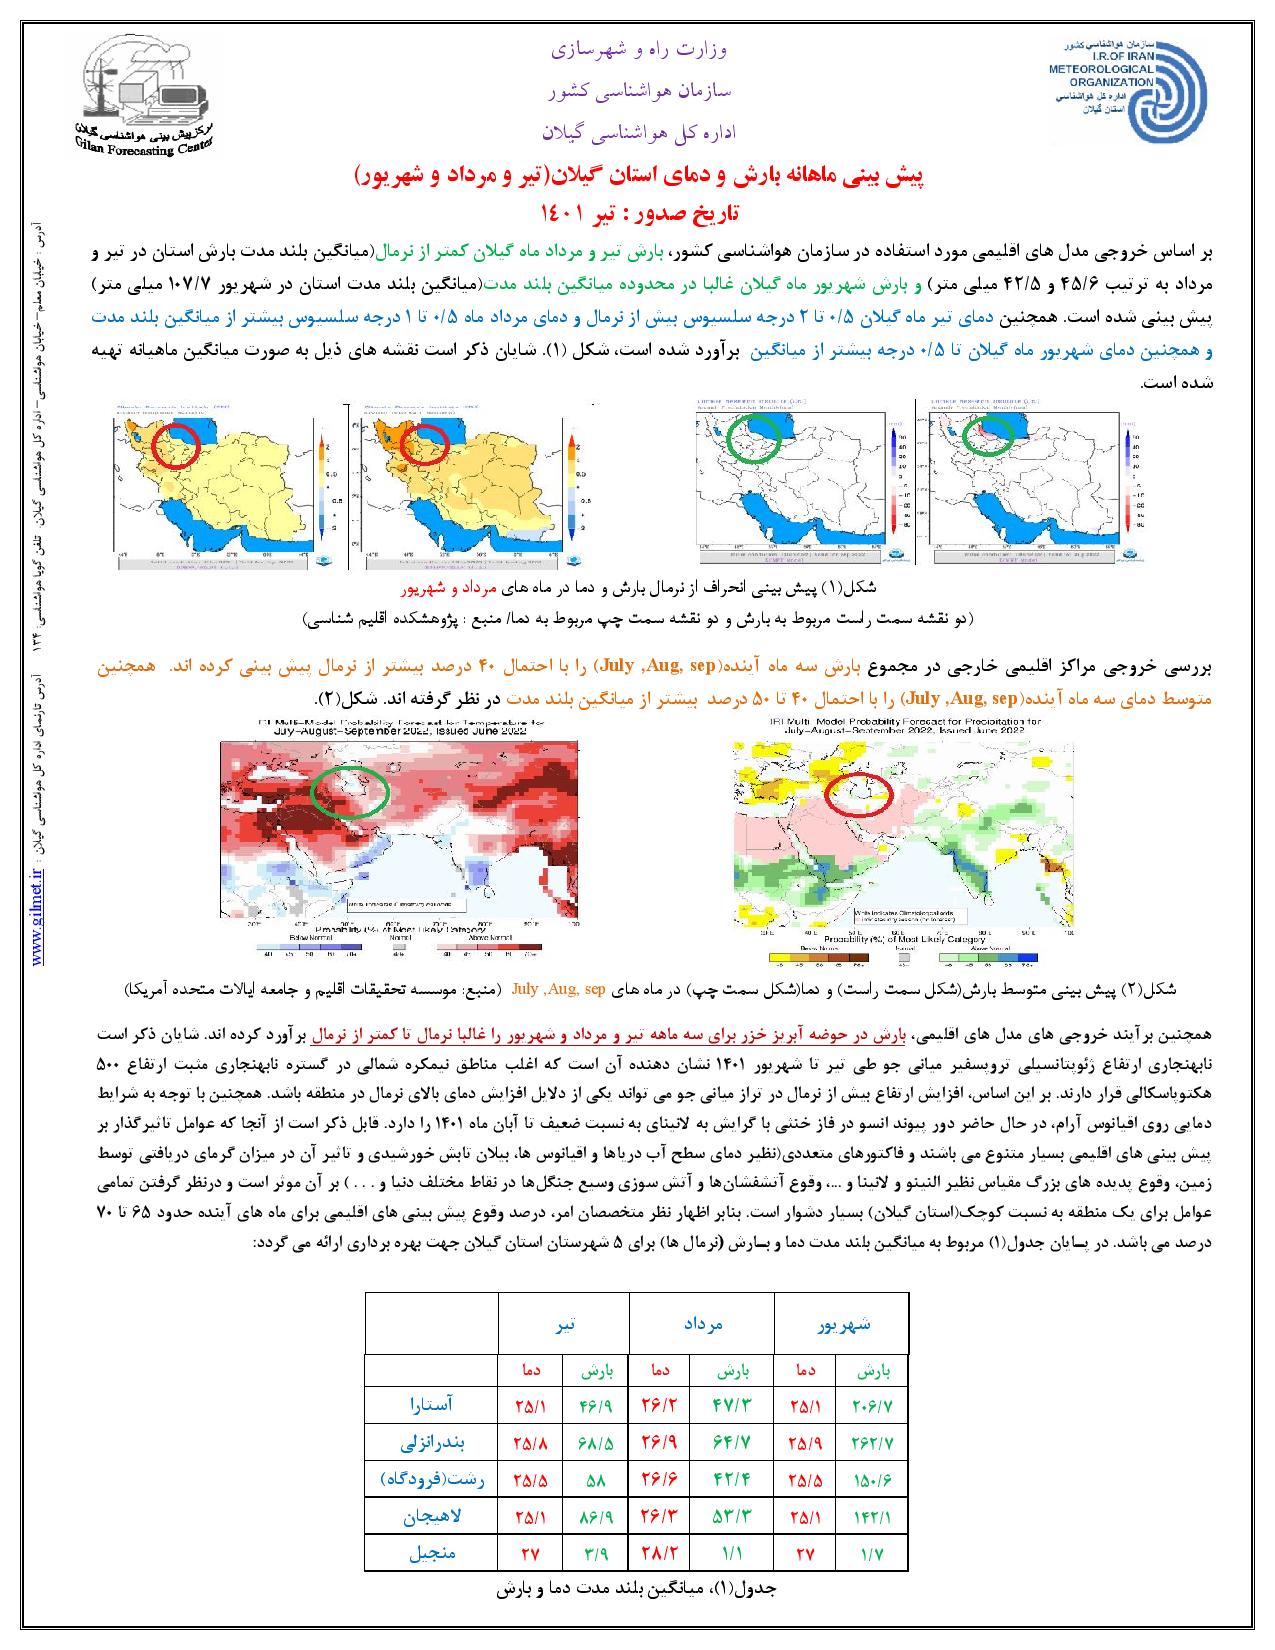 پیش بینی سه ماهه بارش و دمای استان گیلان (تیر، مرداد و شهریور 1401)